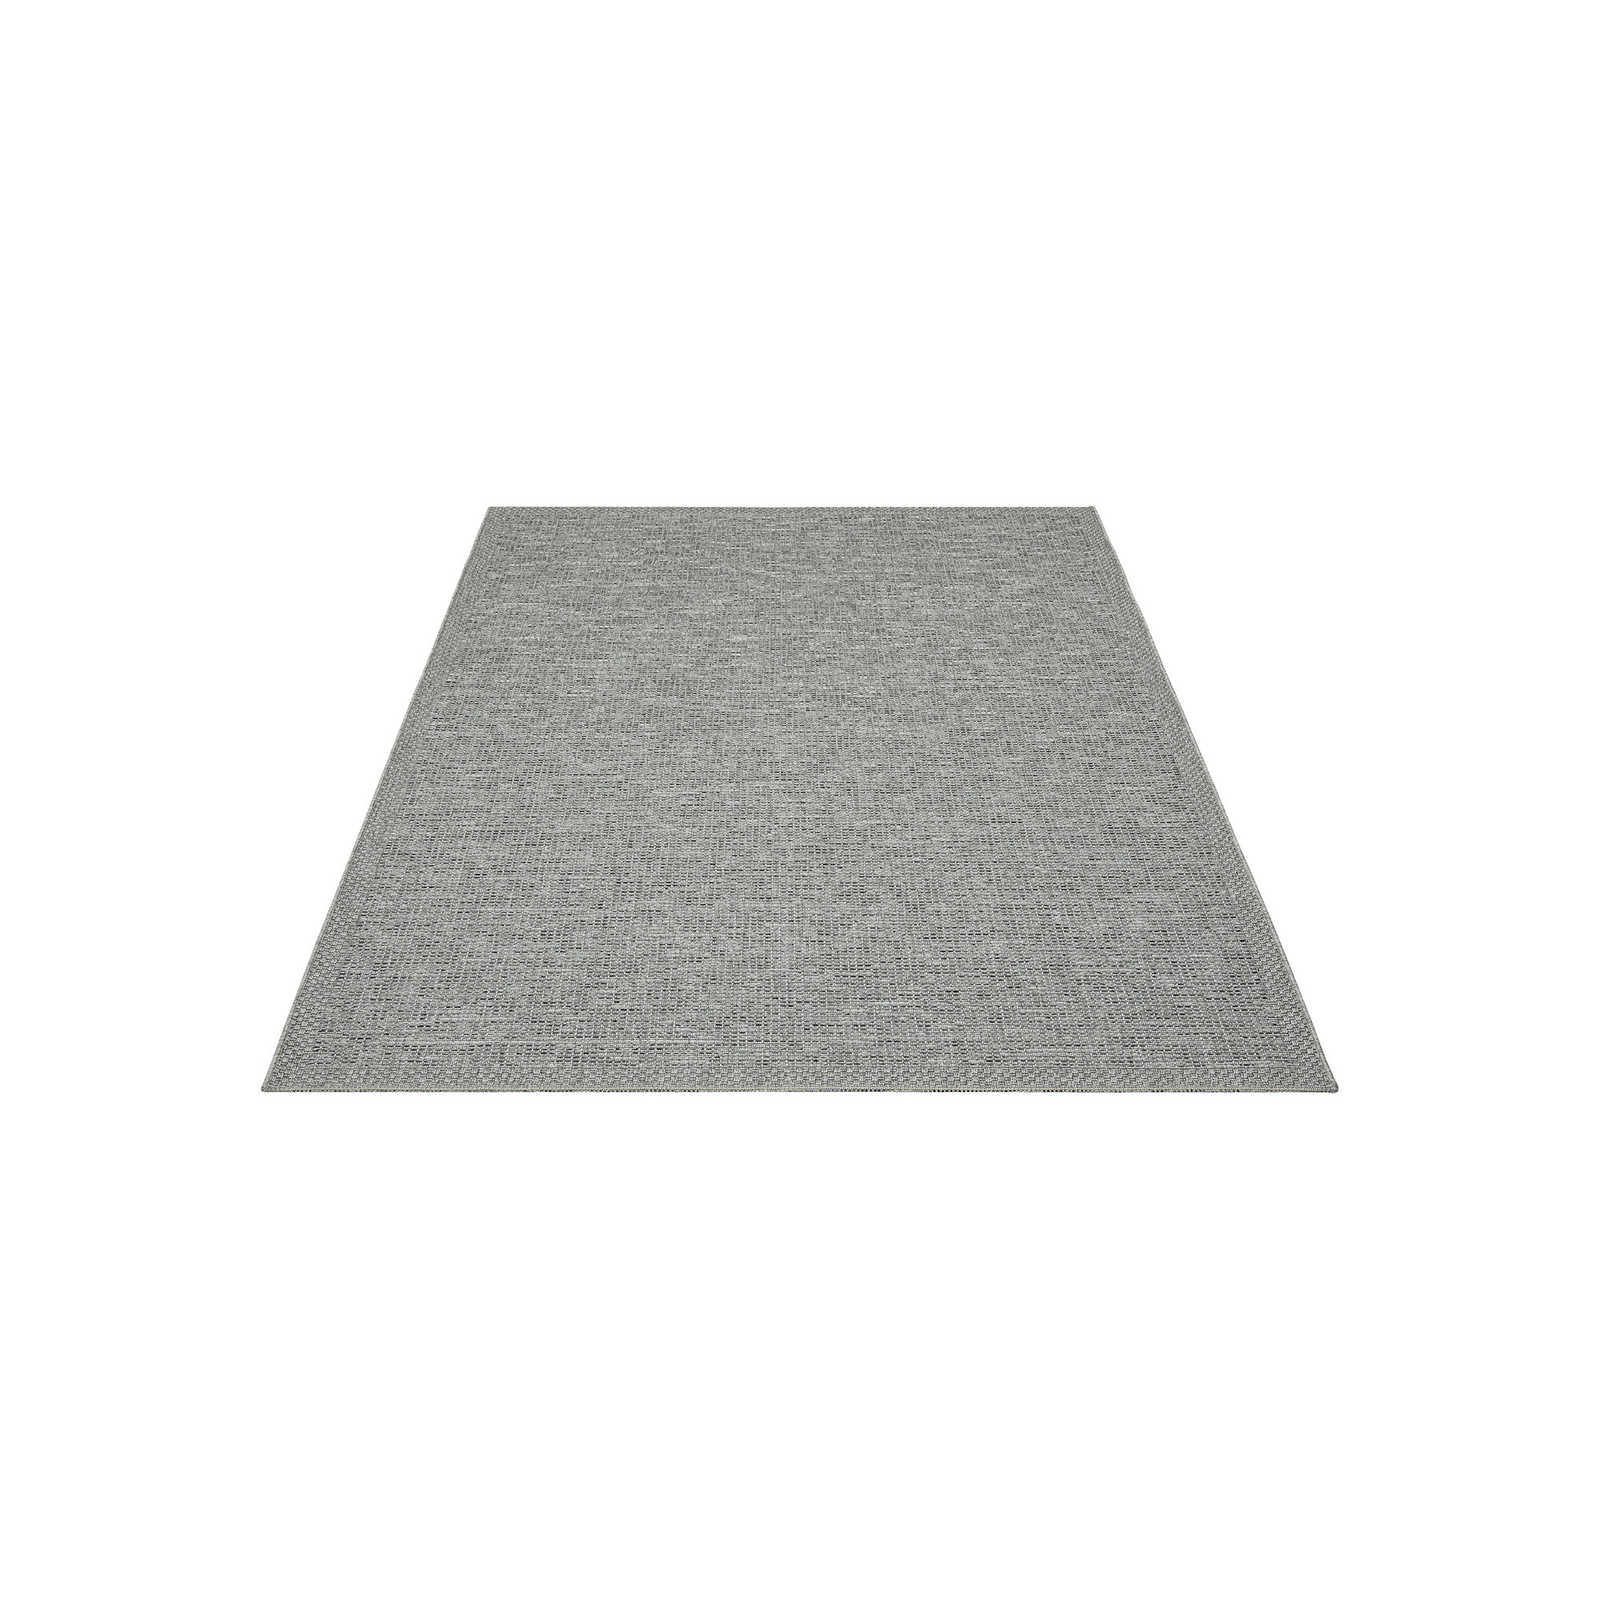 Eenvoudig vloerkleed voor buiten in grijs - 200 x 140 cm
